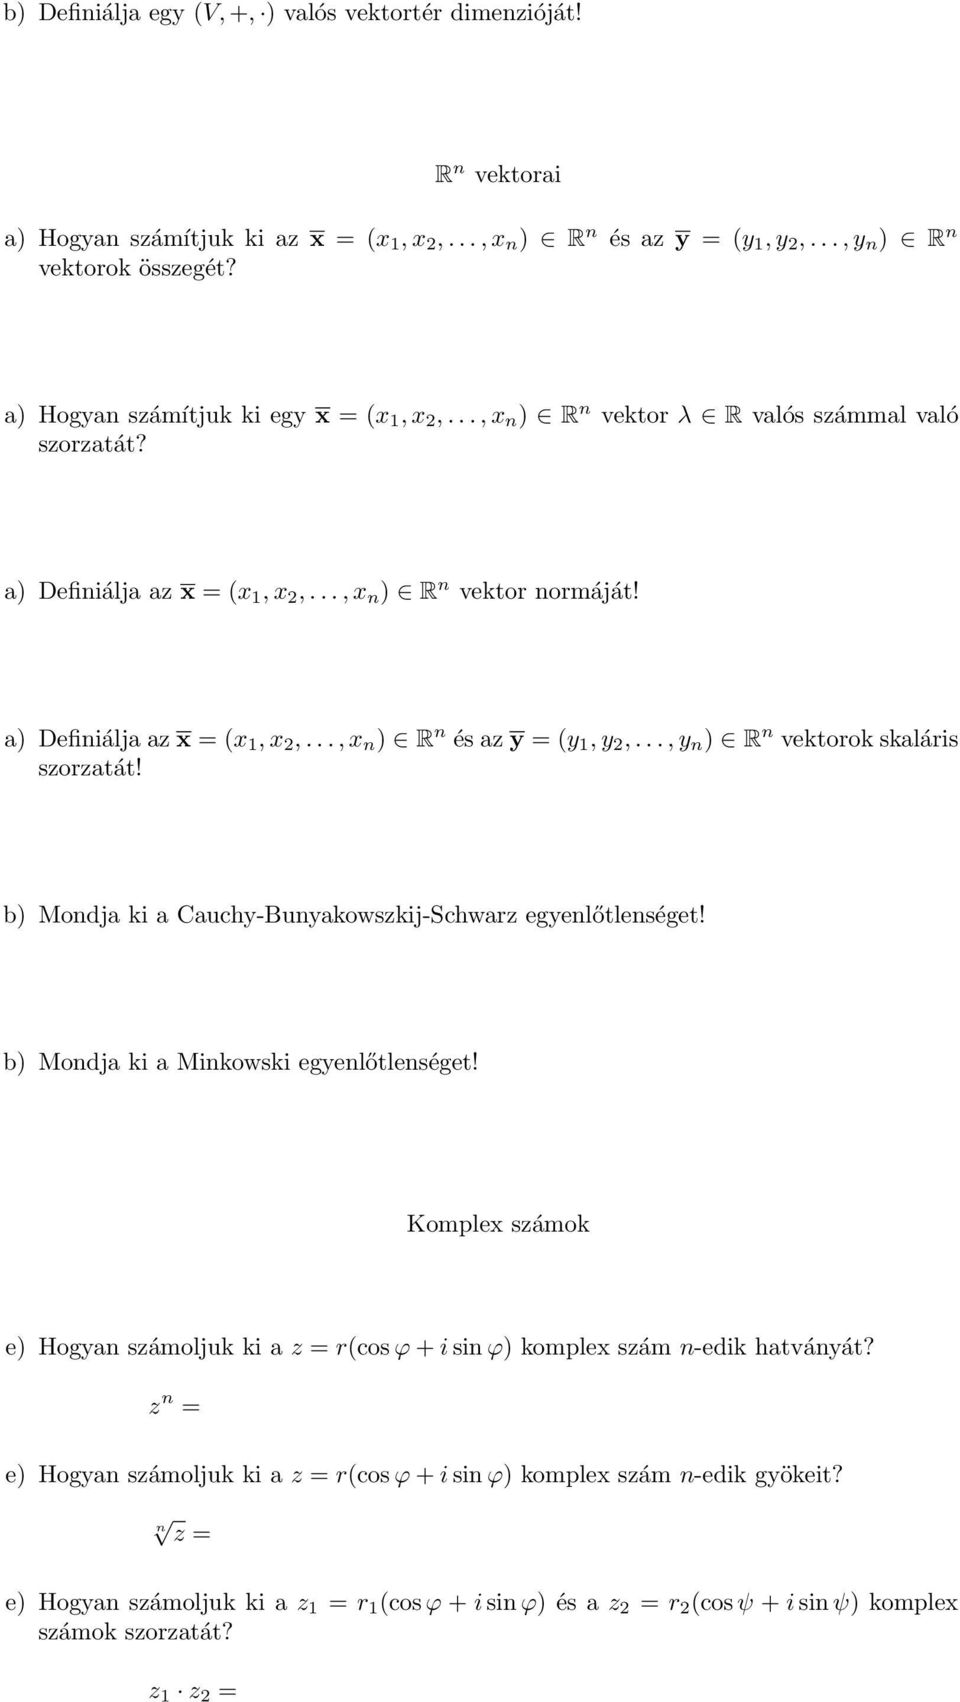 .., y n ) R n vektorok skaláris szorzatát! b) Mondja ki a Cauchy-Bunyakowszkij-Schwarz egyenlőtlenséget! b) Mondja ki a Minkowski egyenlőtlenséget!